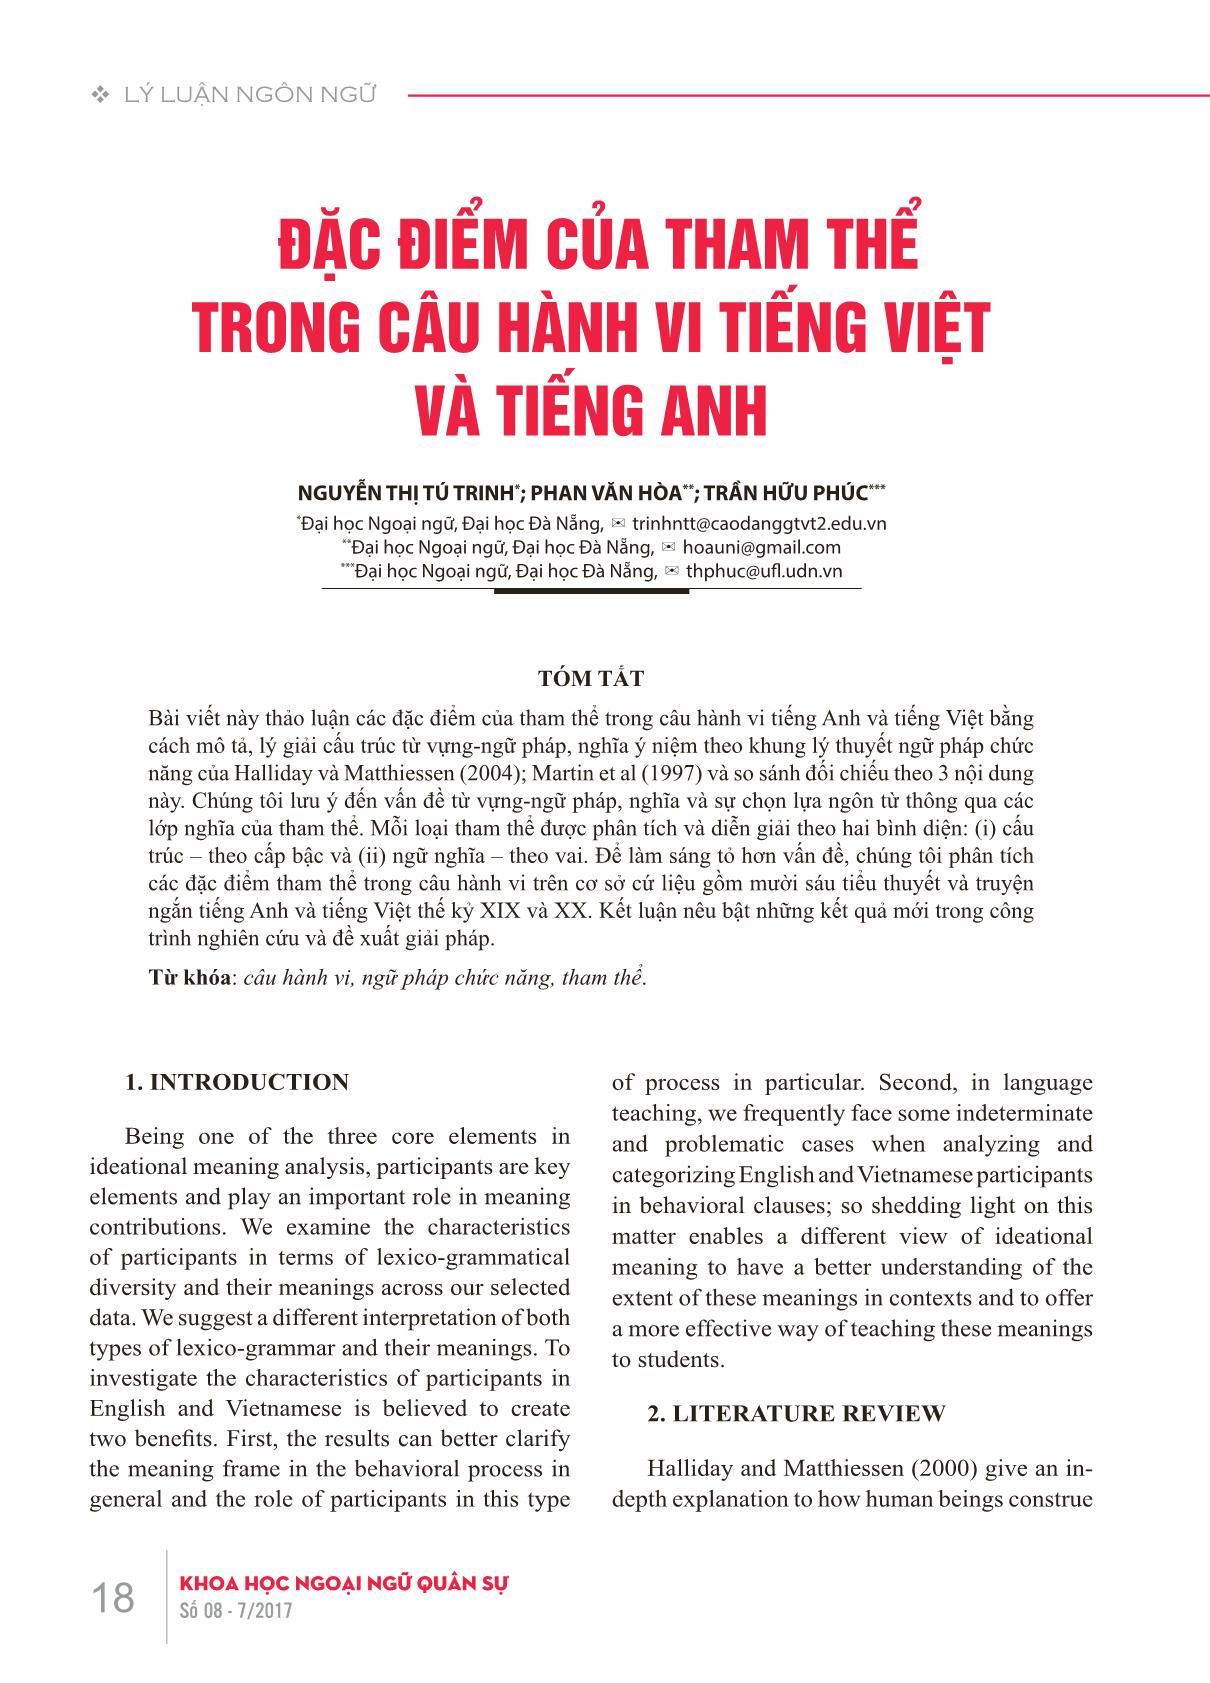 Đặc điểm của tham thể trong câu hành vi Tiếng Việt và Tiếng Anh trang 1